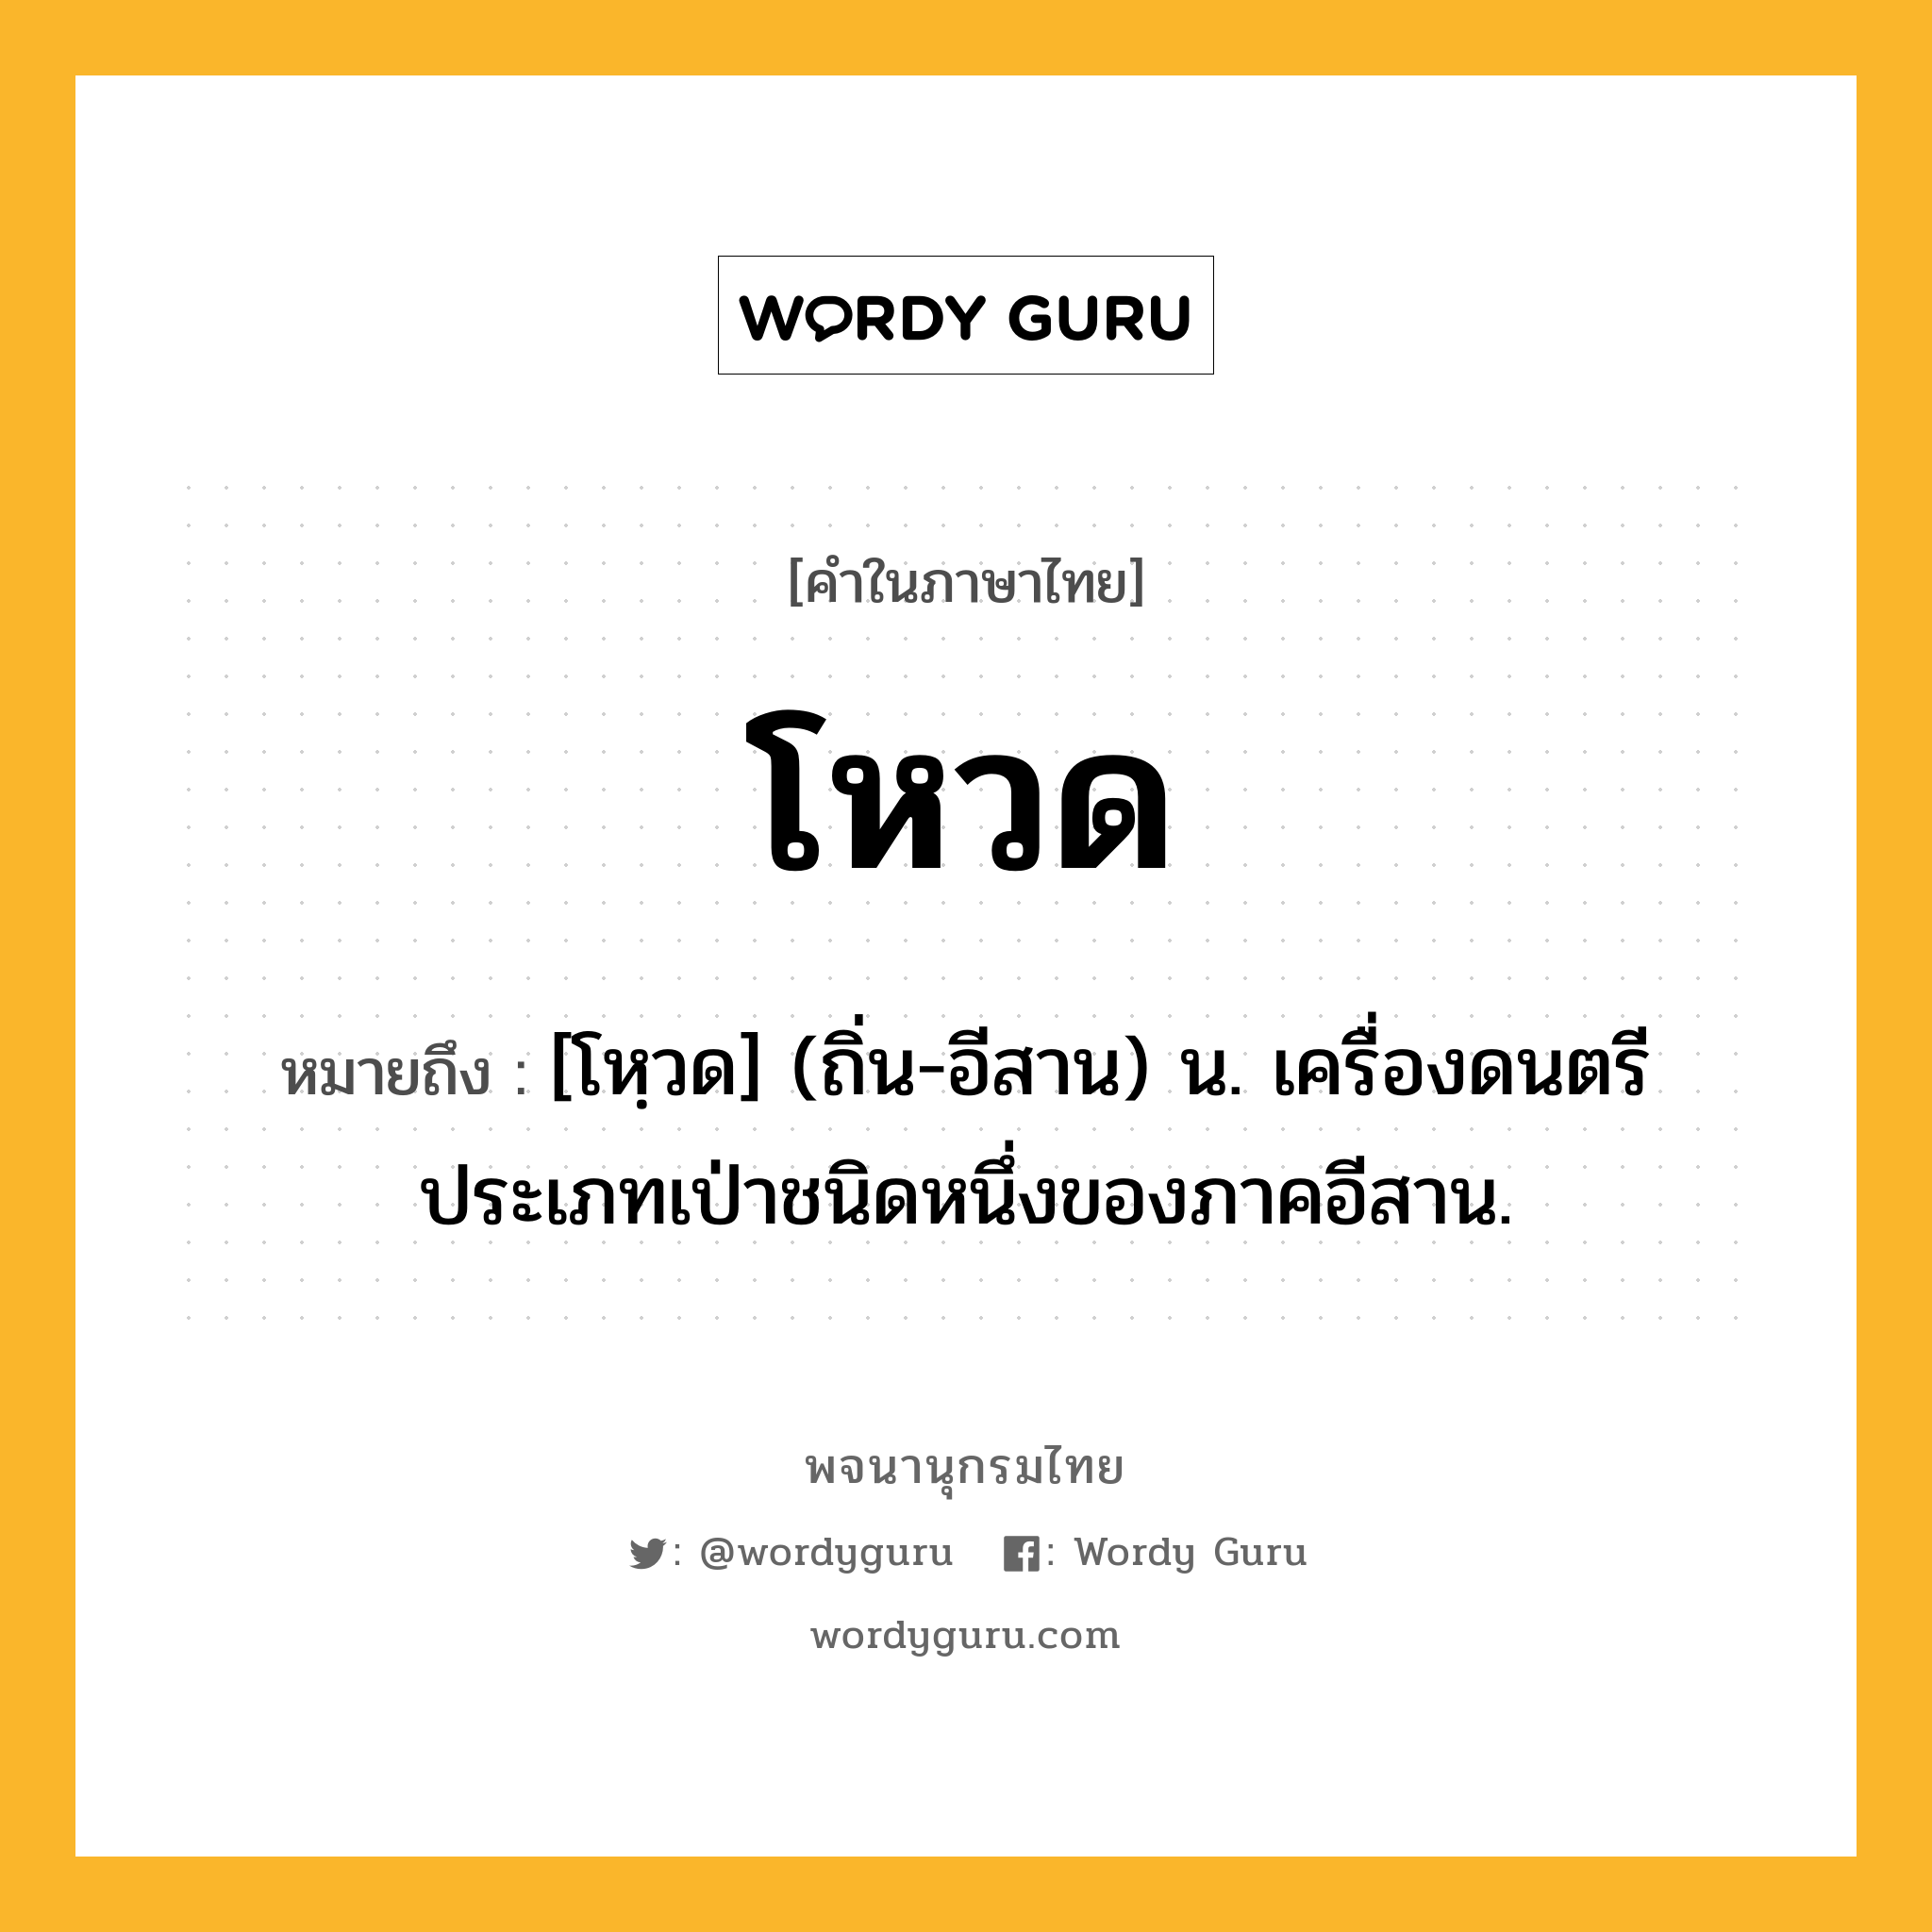 โหวด หมายถึงอะไร?, คำในภาษาไทย โหวด หมายถึง [โหฺวด] (ถิ่น-อีสาน) น. เครื่องดนตรีประเภทเป่าชนิดหนึ่งของภาคอีสาน.